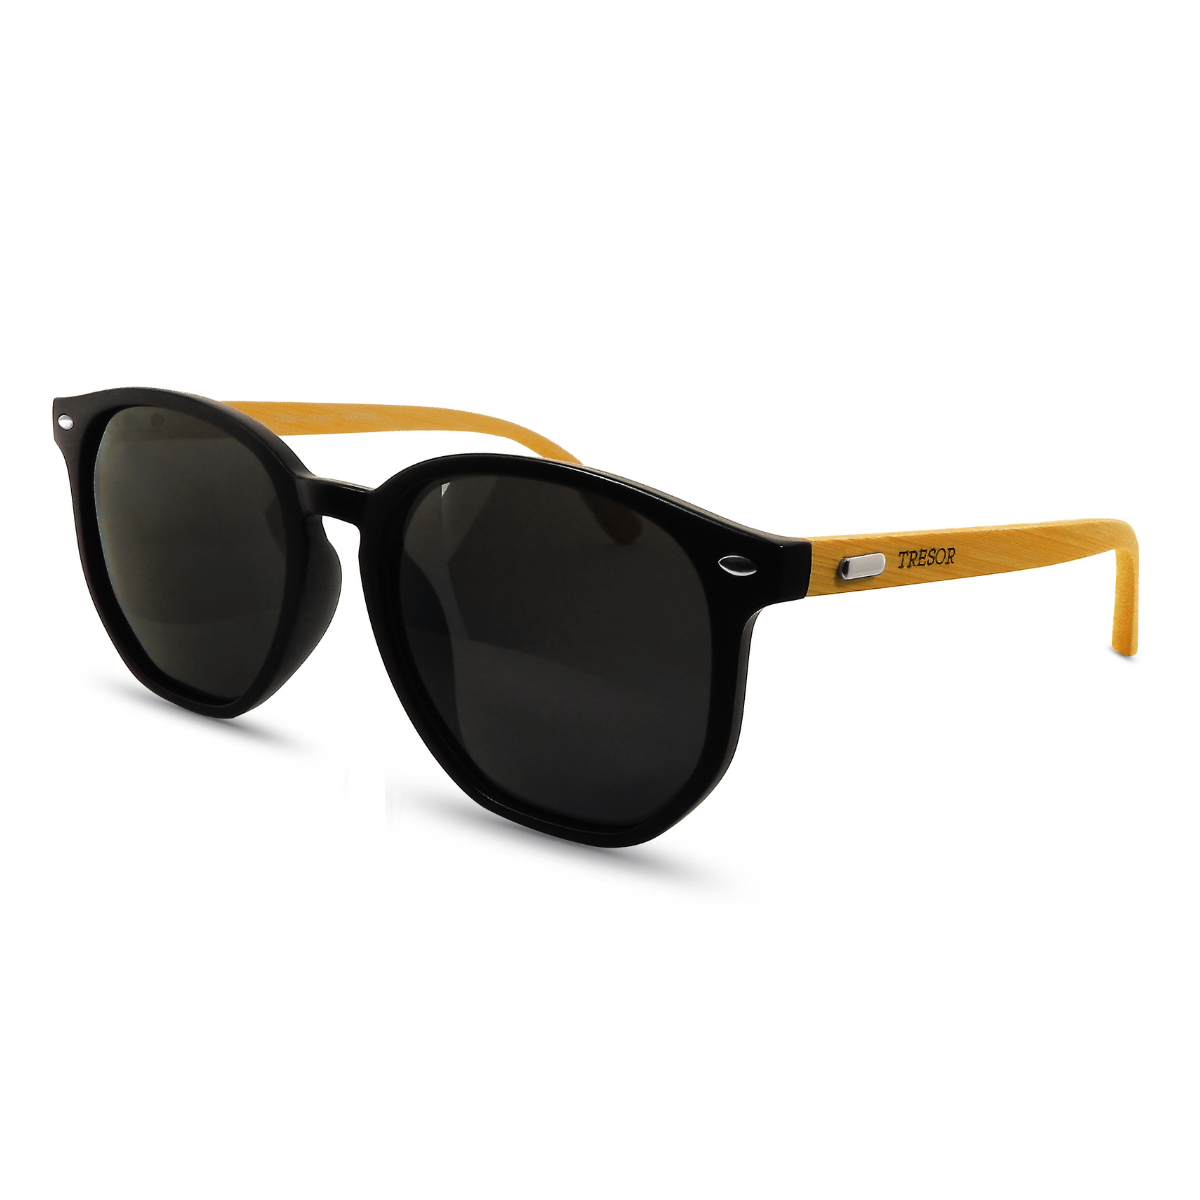 Óculos de Sol Tresor Ibiza Unissex Polarizado com Haste de Bamboo